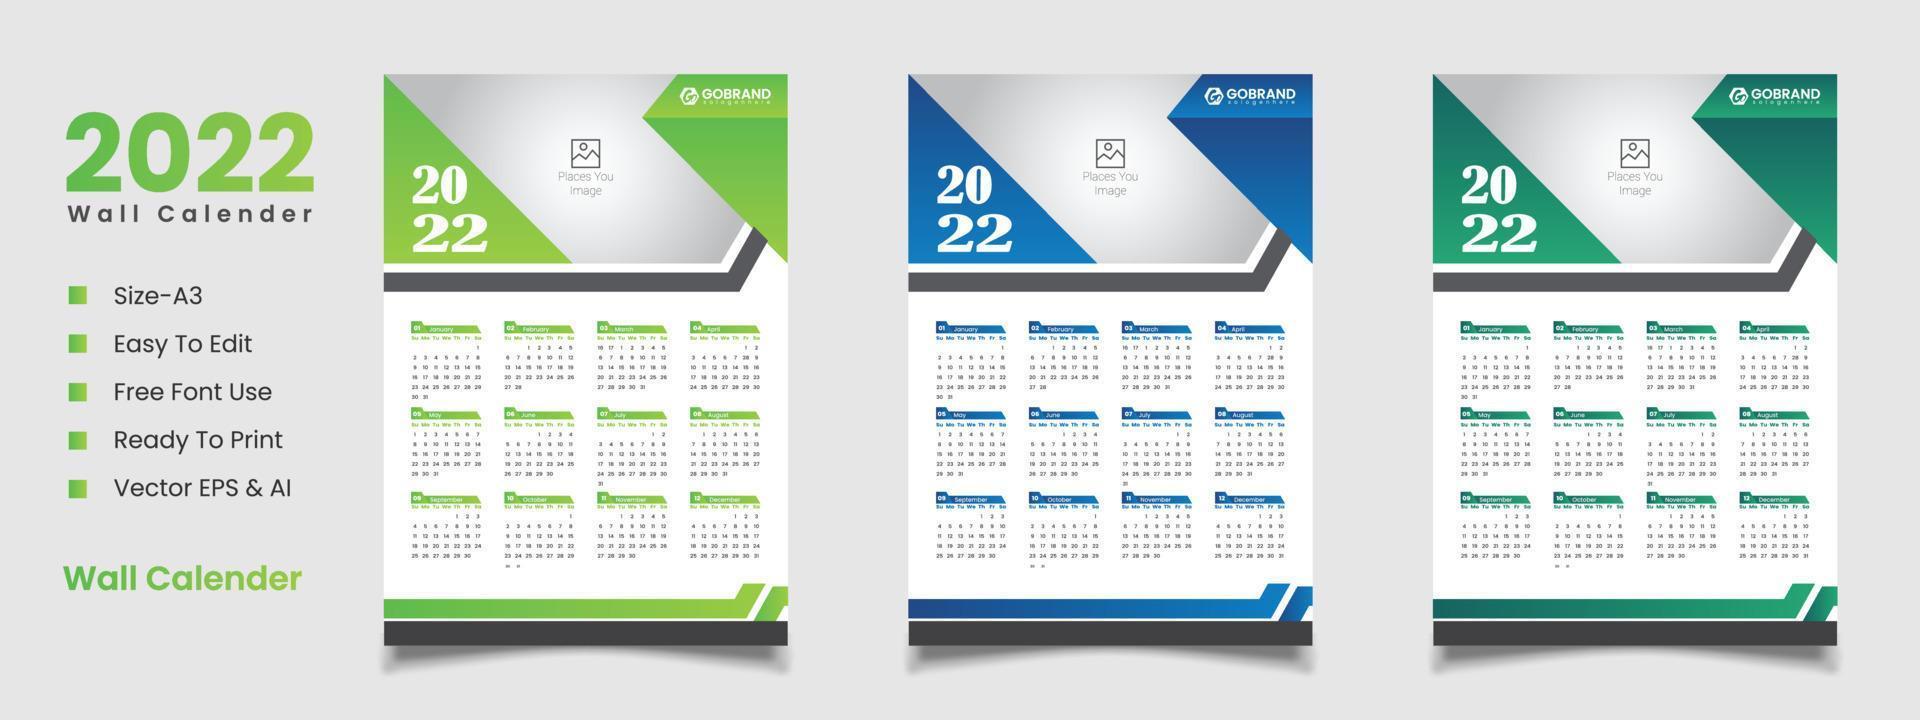 2022 wall calendar design vector